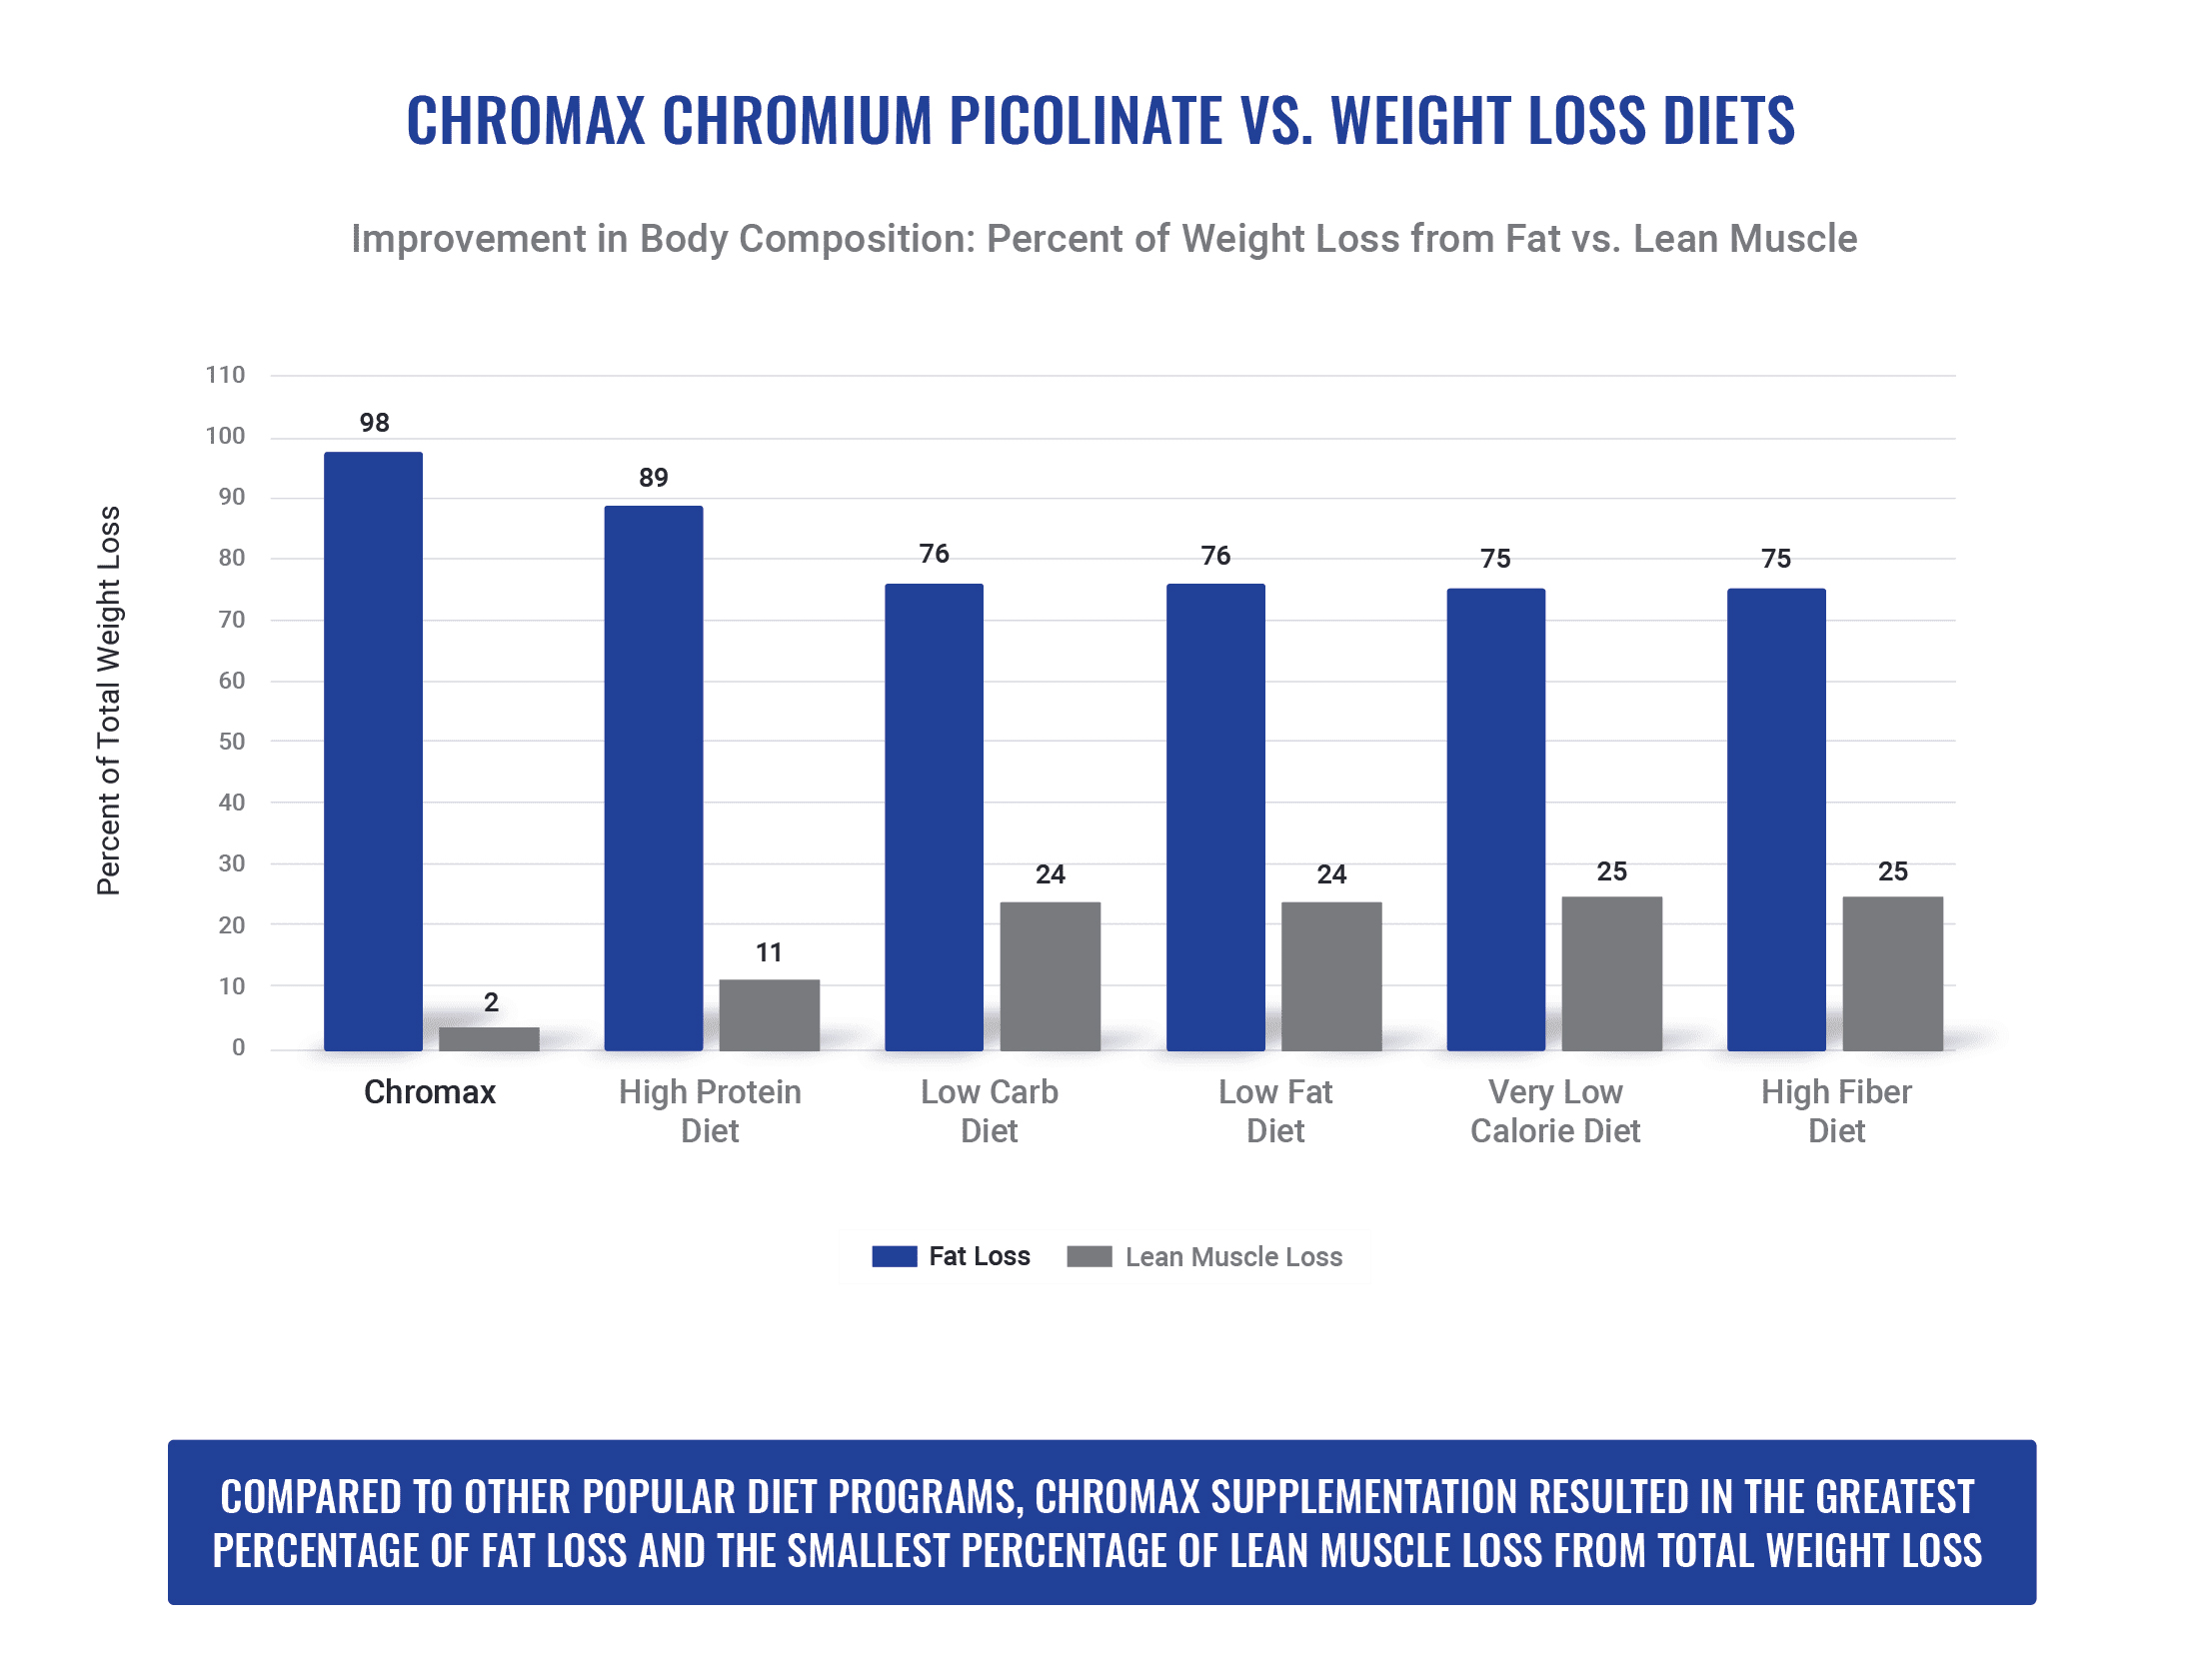 Chromax vs. Diets